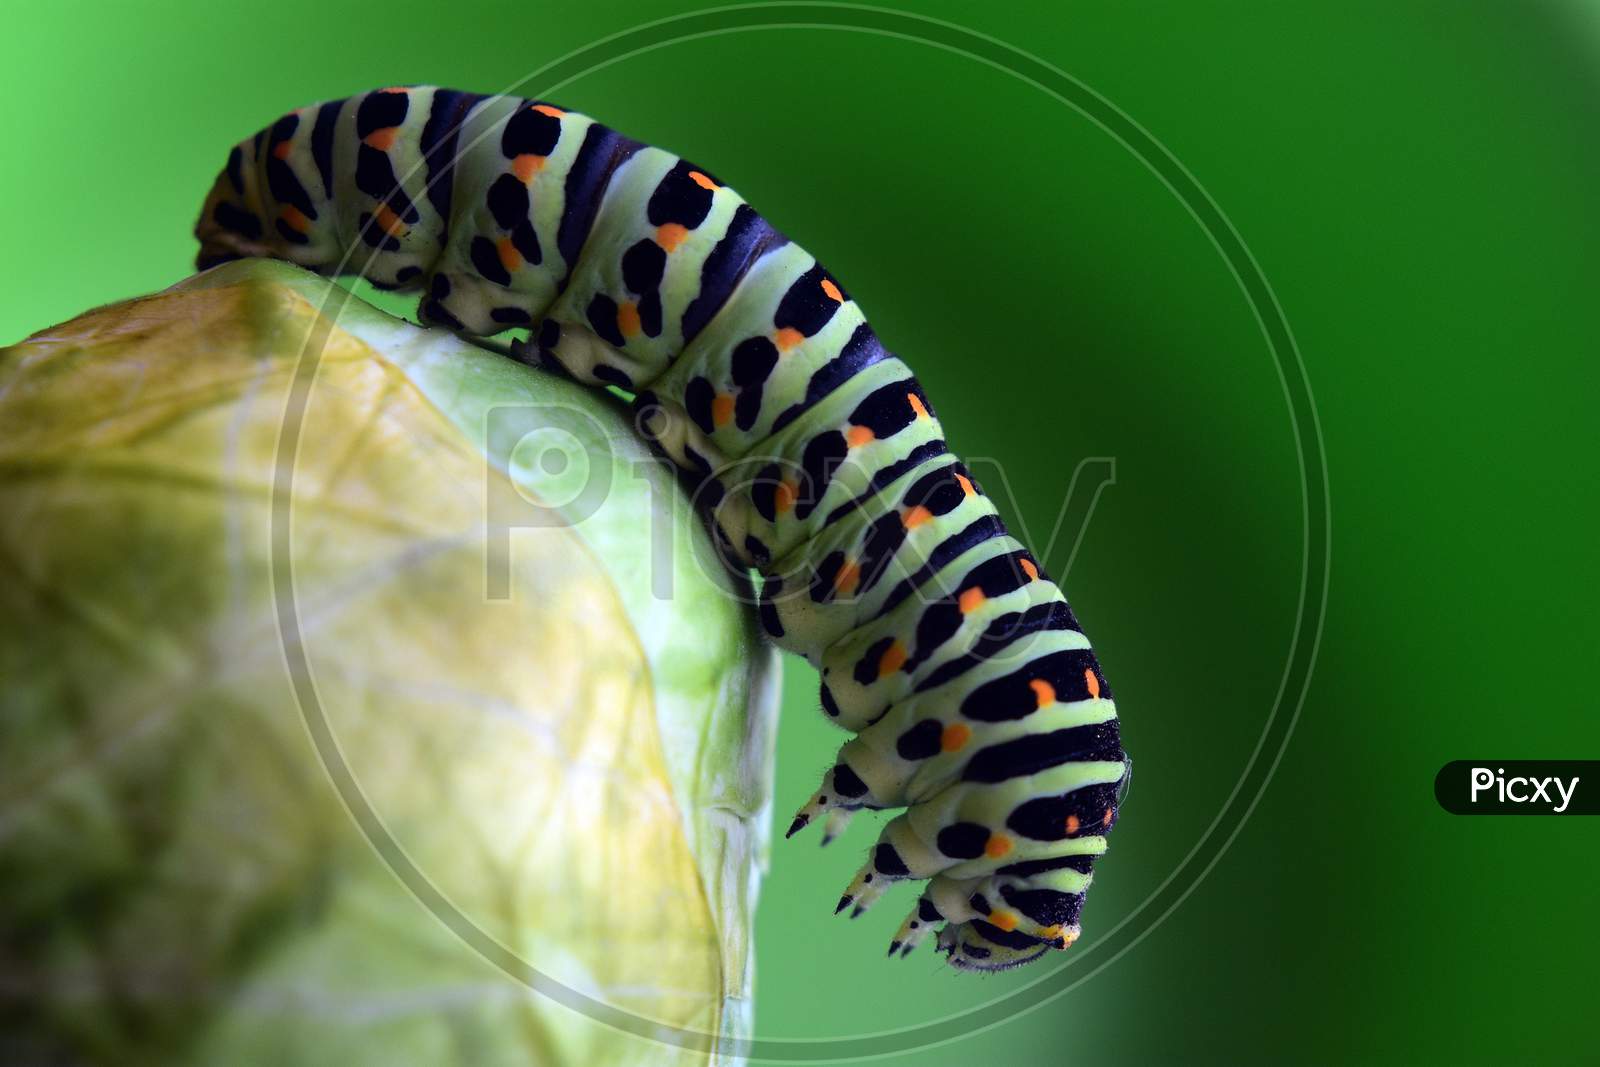 catterpillar